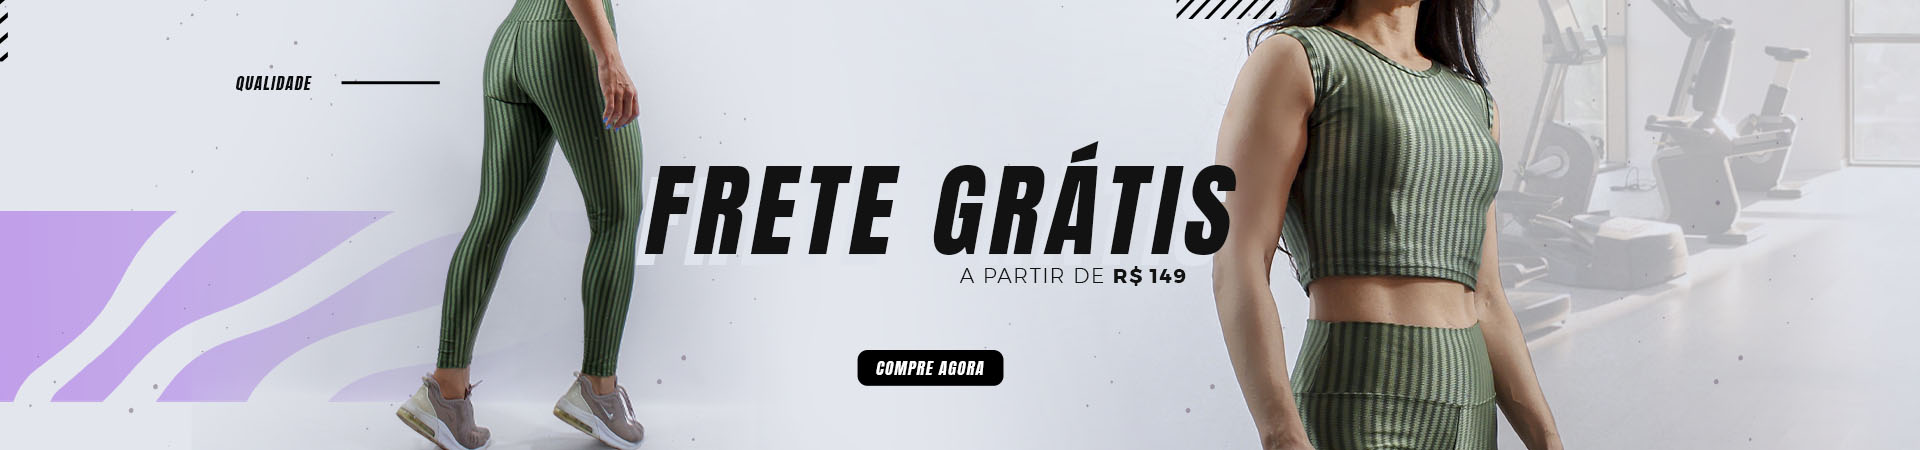 Full Banner 2 - Frete grátis